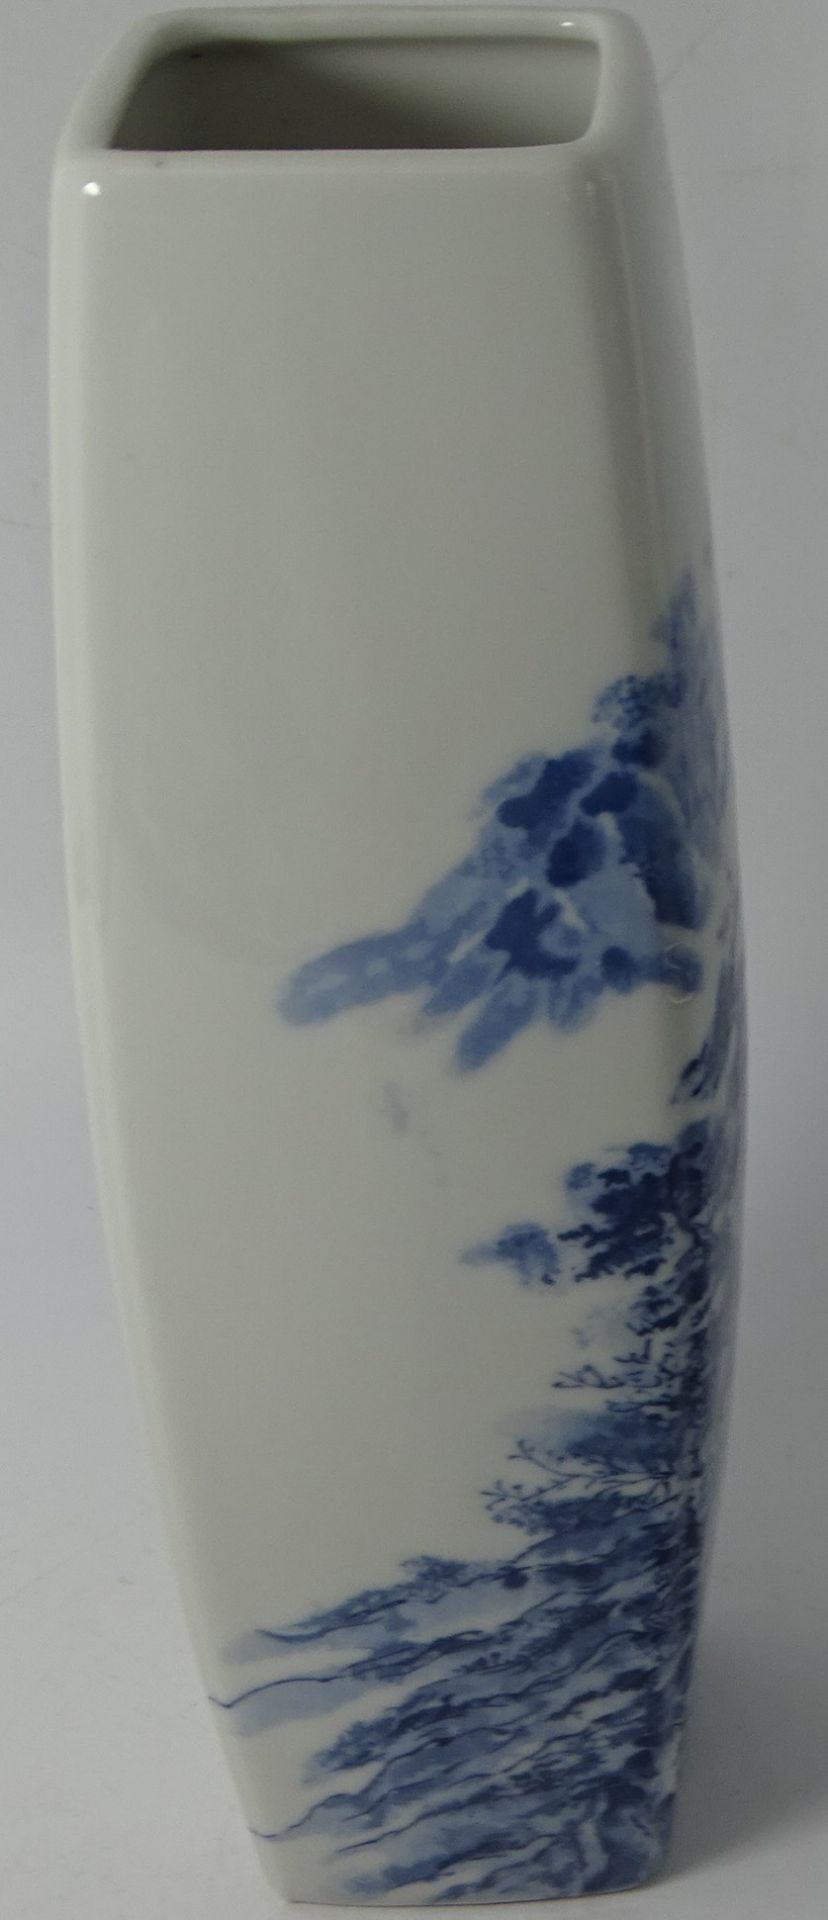 hohe schlanke China Vase mit Blaumalerei, gemarkt, H-29 cm - Bild 4 aus 6